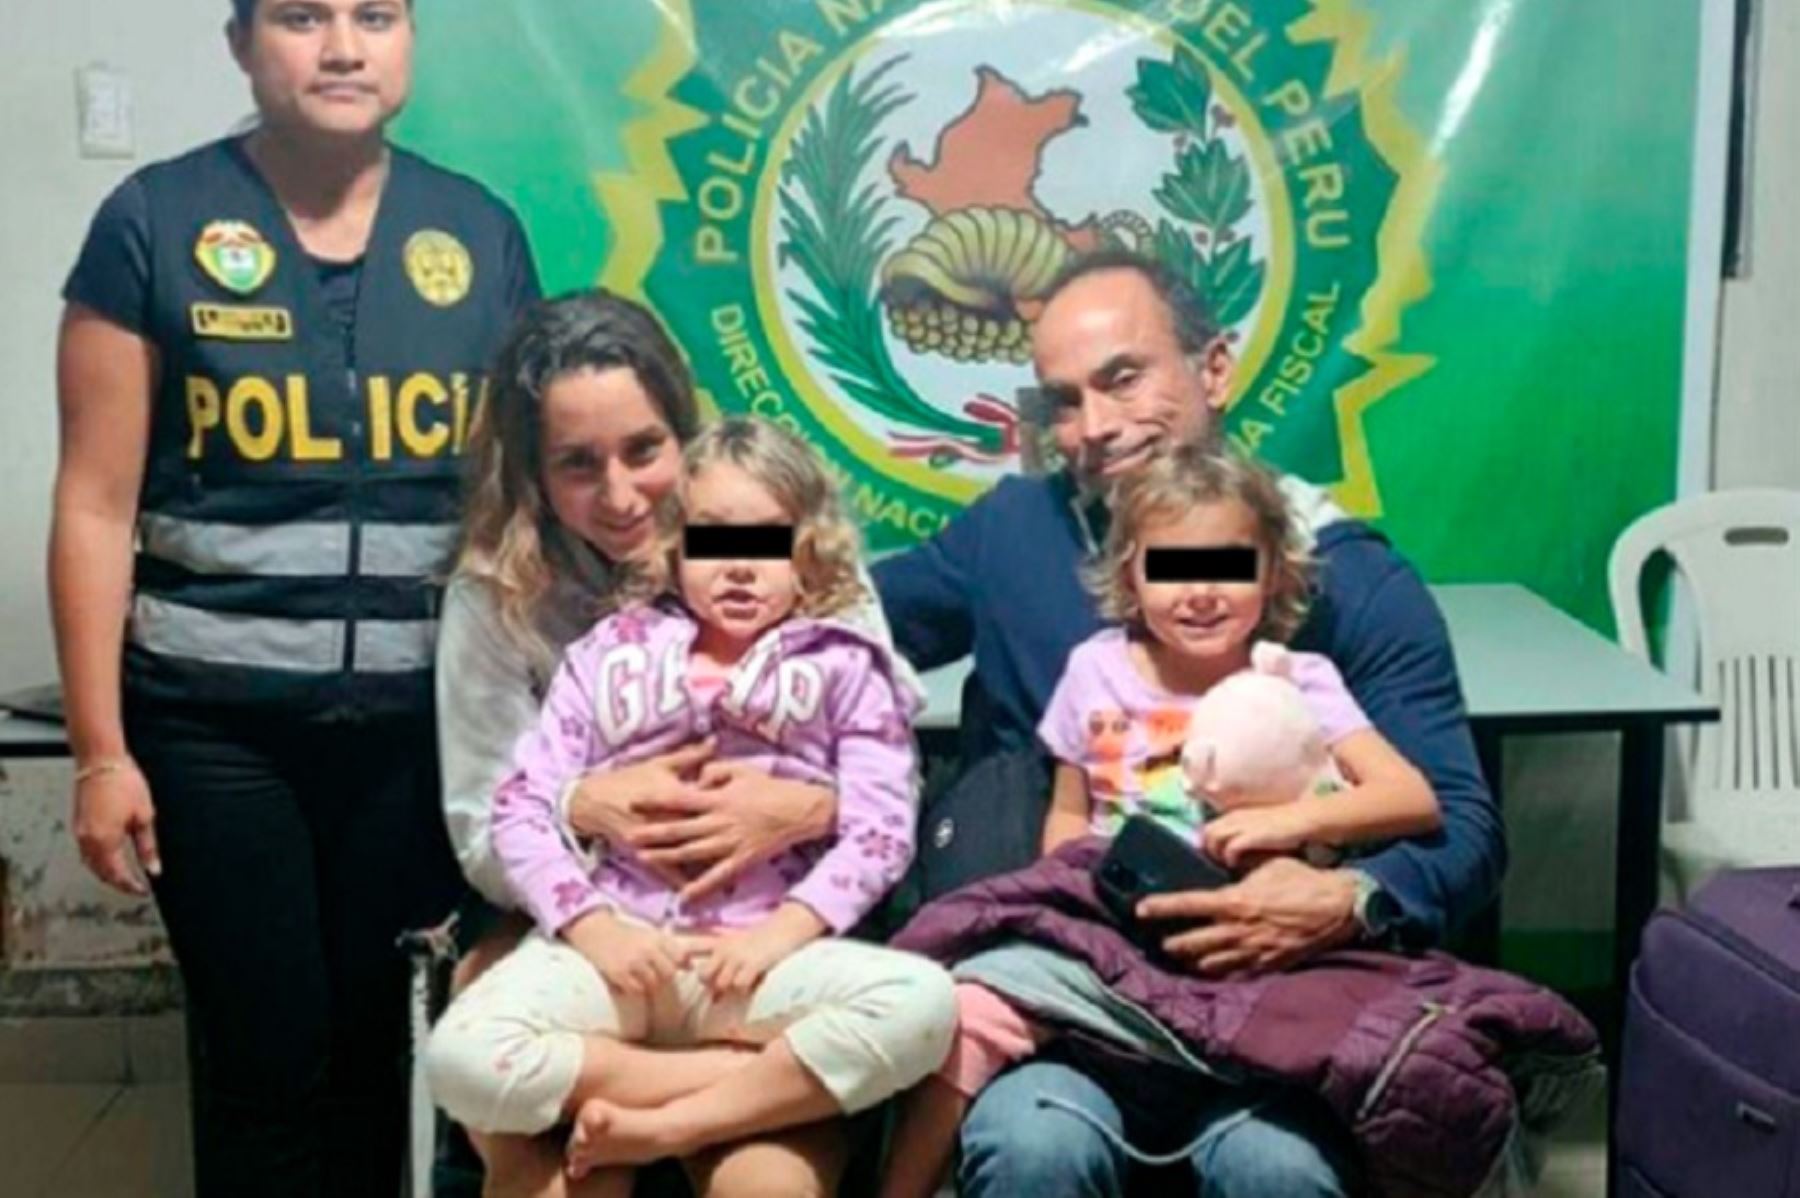 Piura: Policía Nacional rescata a dos menores y las reúne nuevamente con su madre